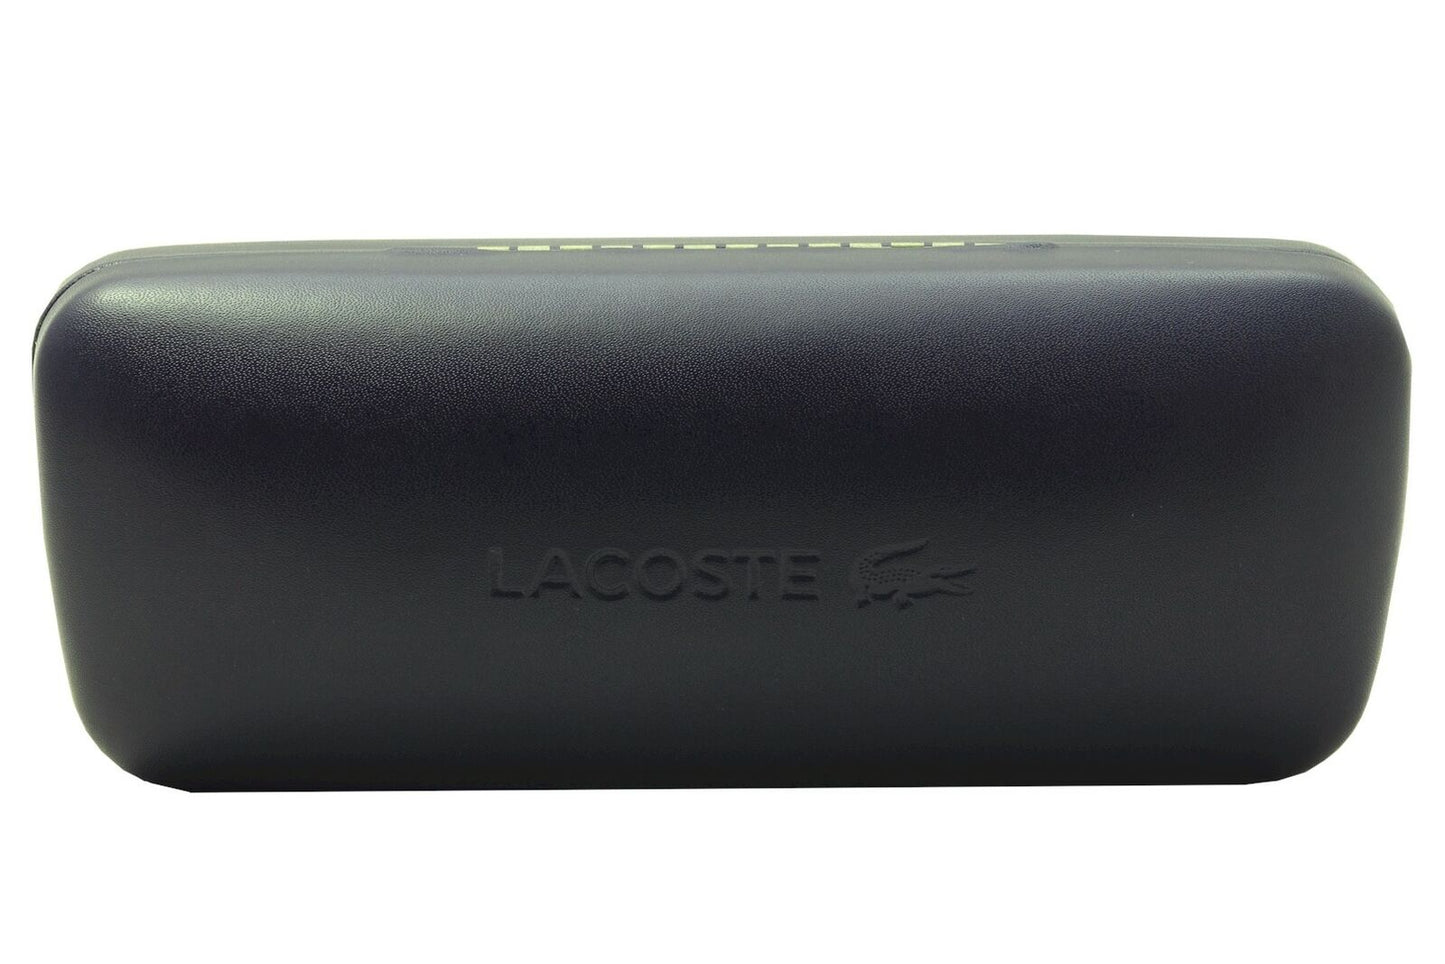 Lacoste L188S-033 59mm New Sunglasses